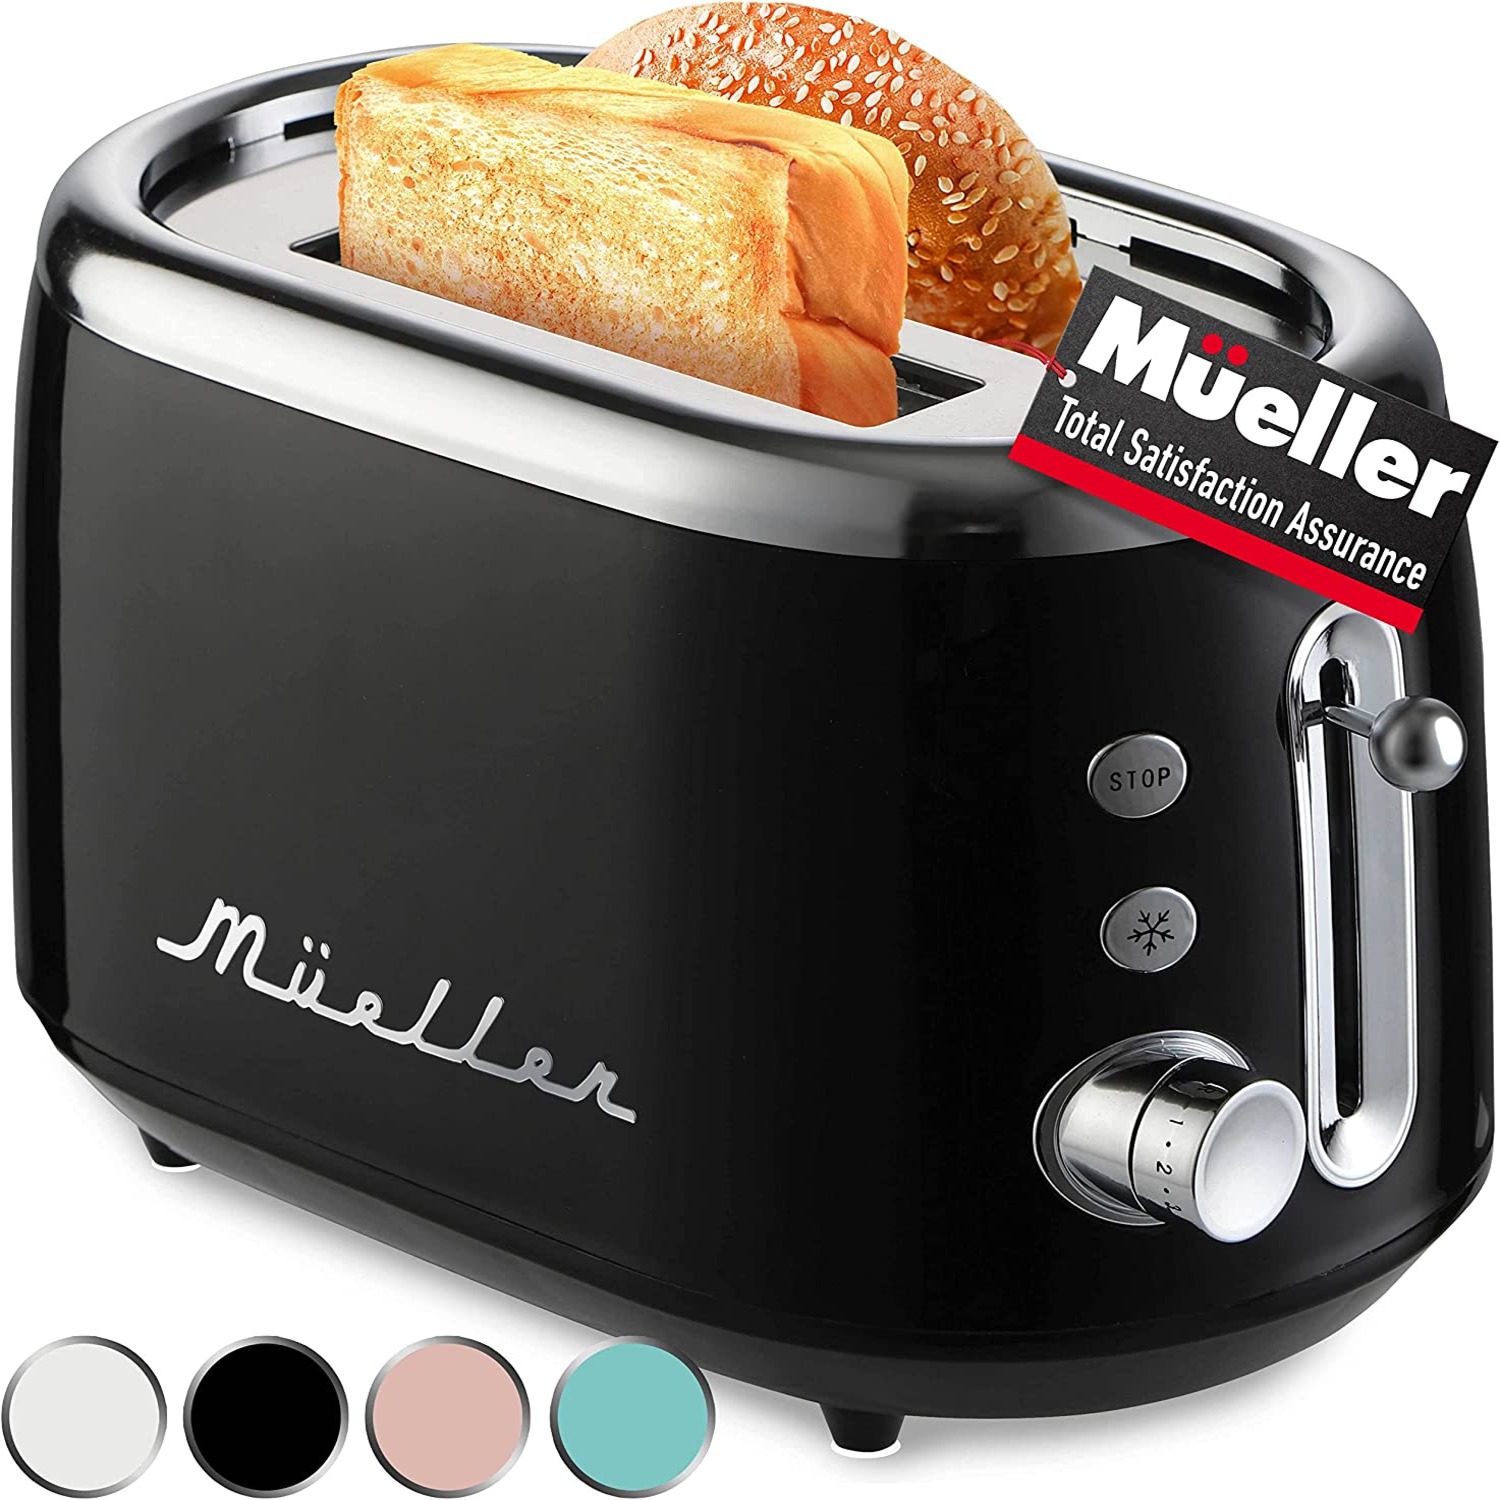 muellerhome_RetroToast0-2-Slice-Toaster-Black1